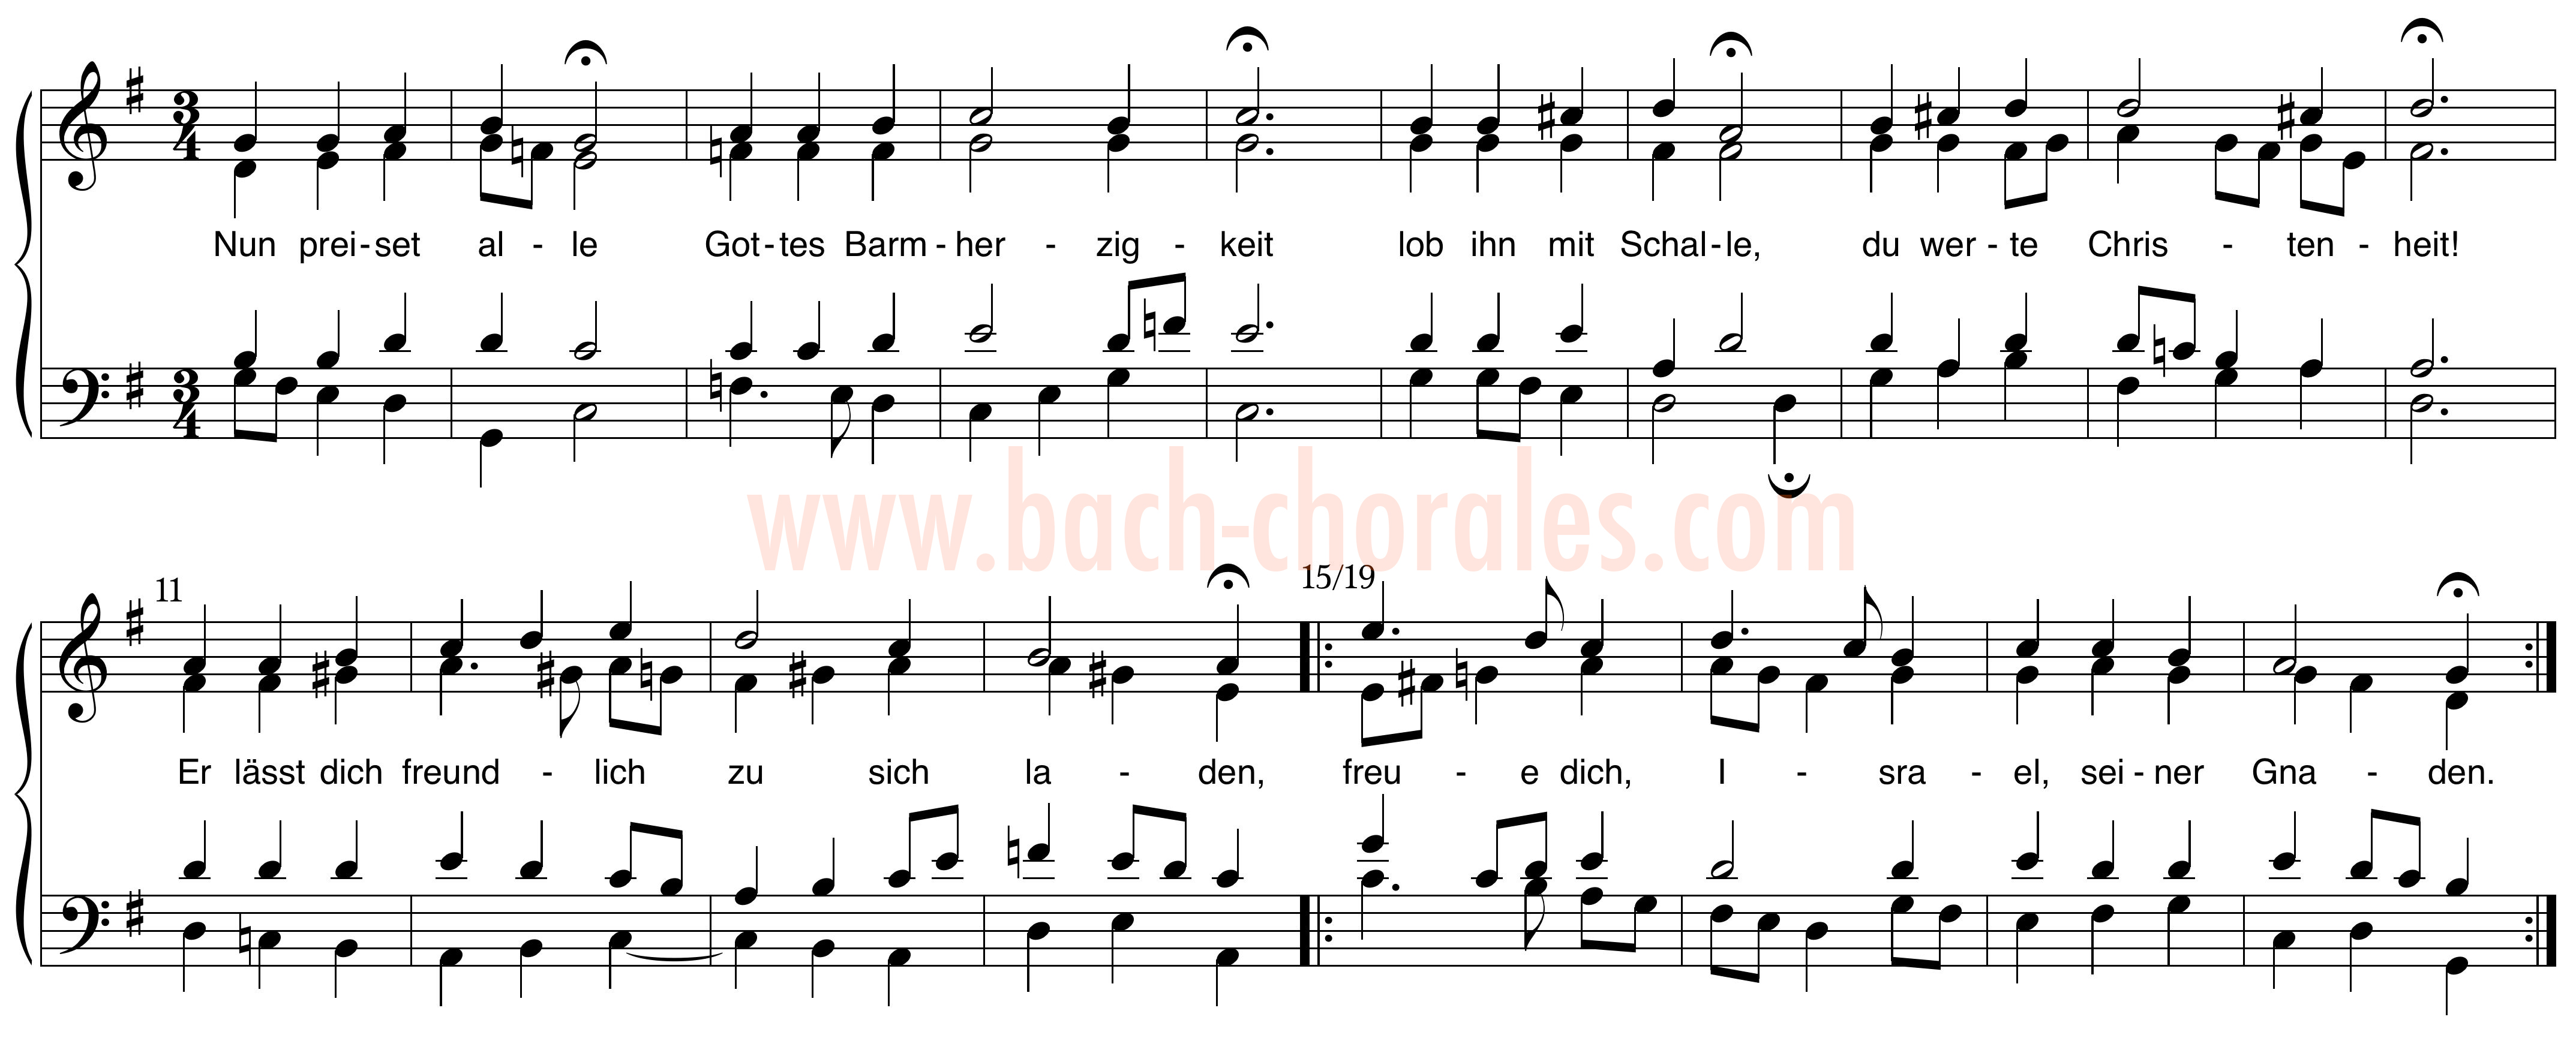 notenbeeld BWV 391 op https://www.bach-chorales.com/